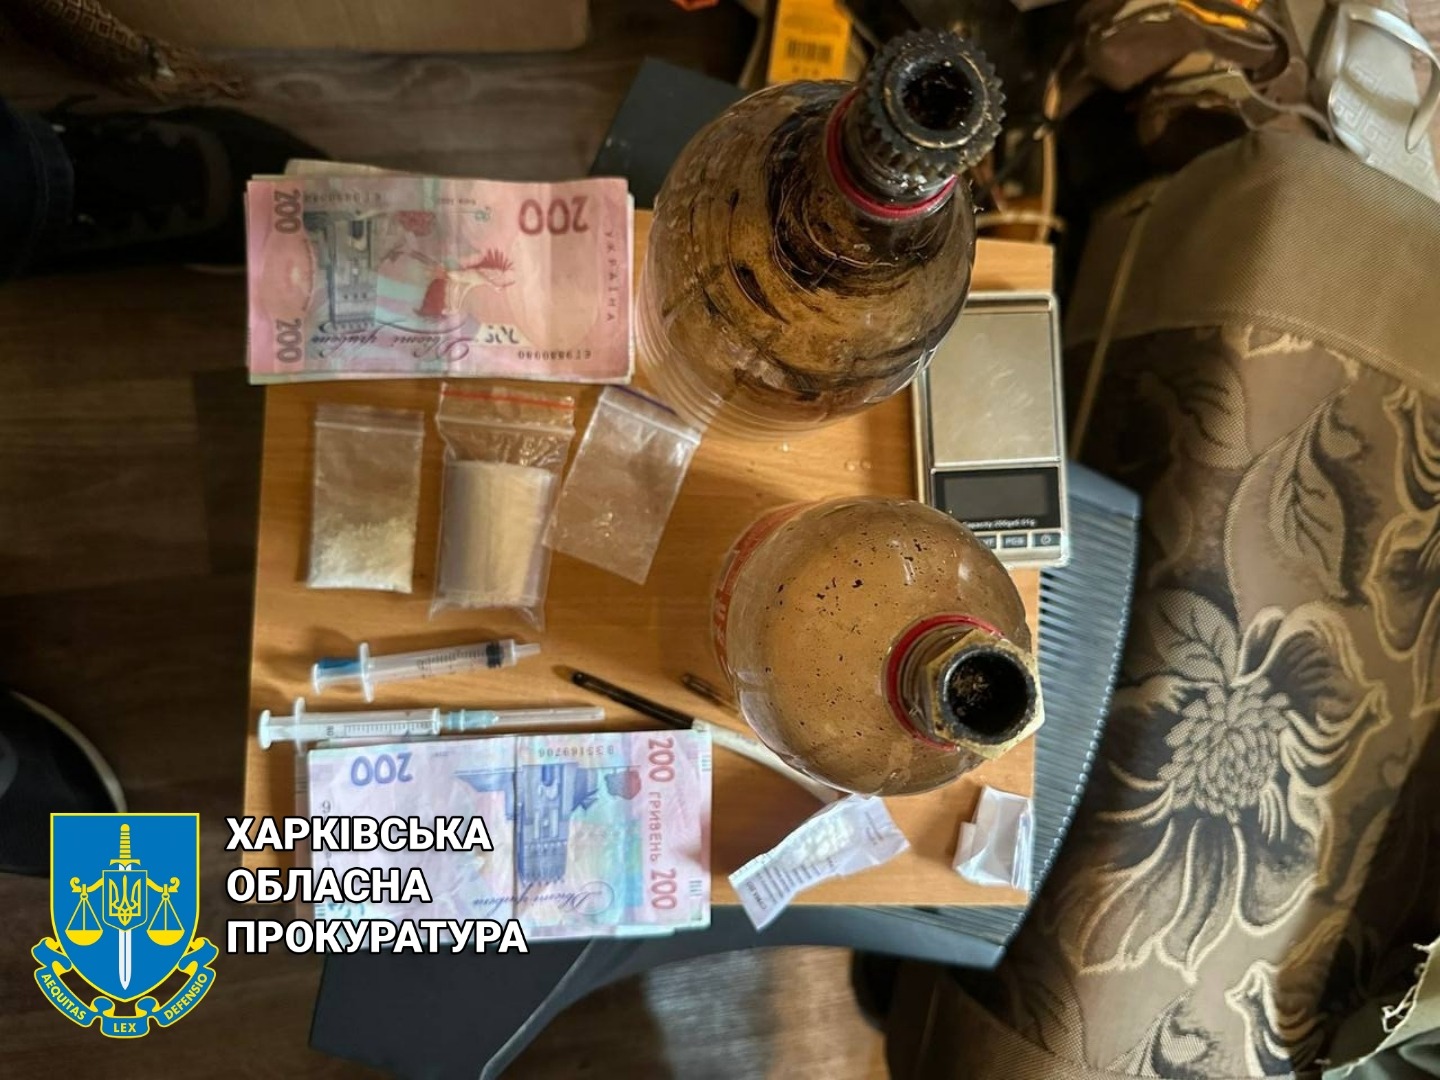 Харків’янин продавав психотропи: коли його обшукували, зімітував непритомність